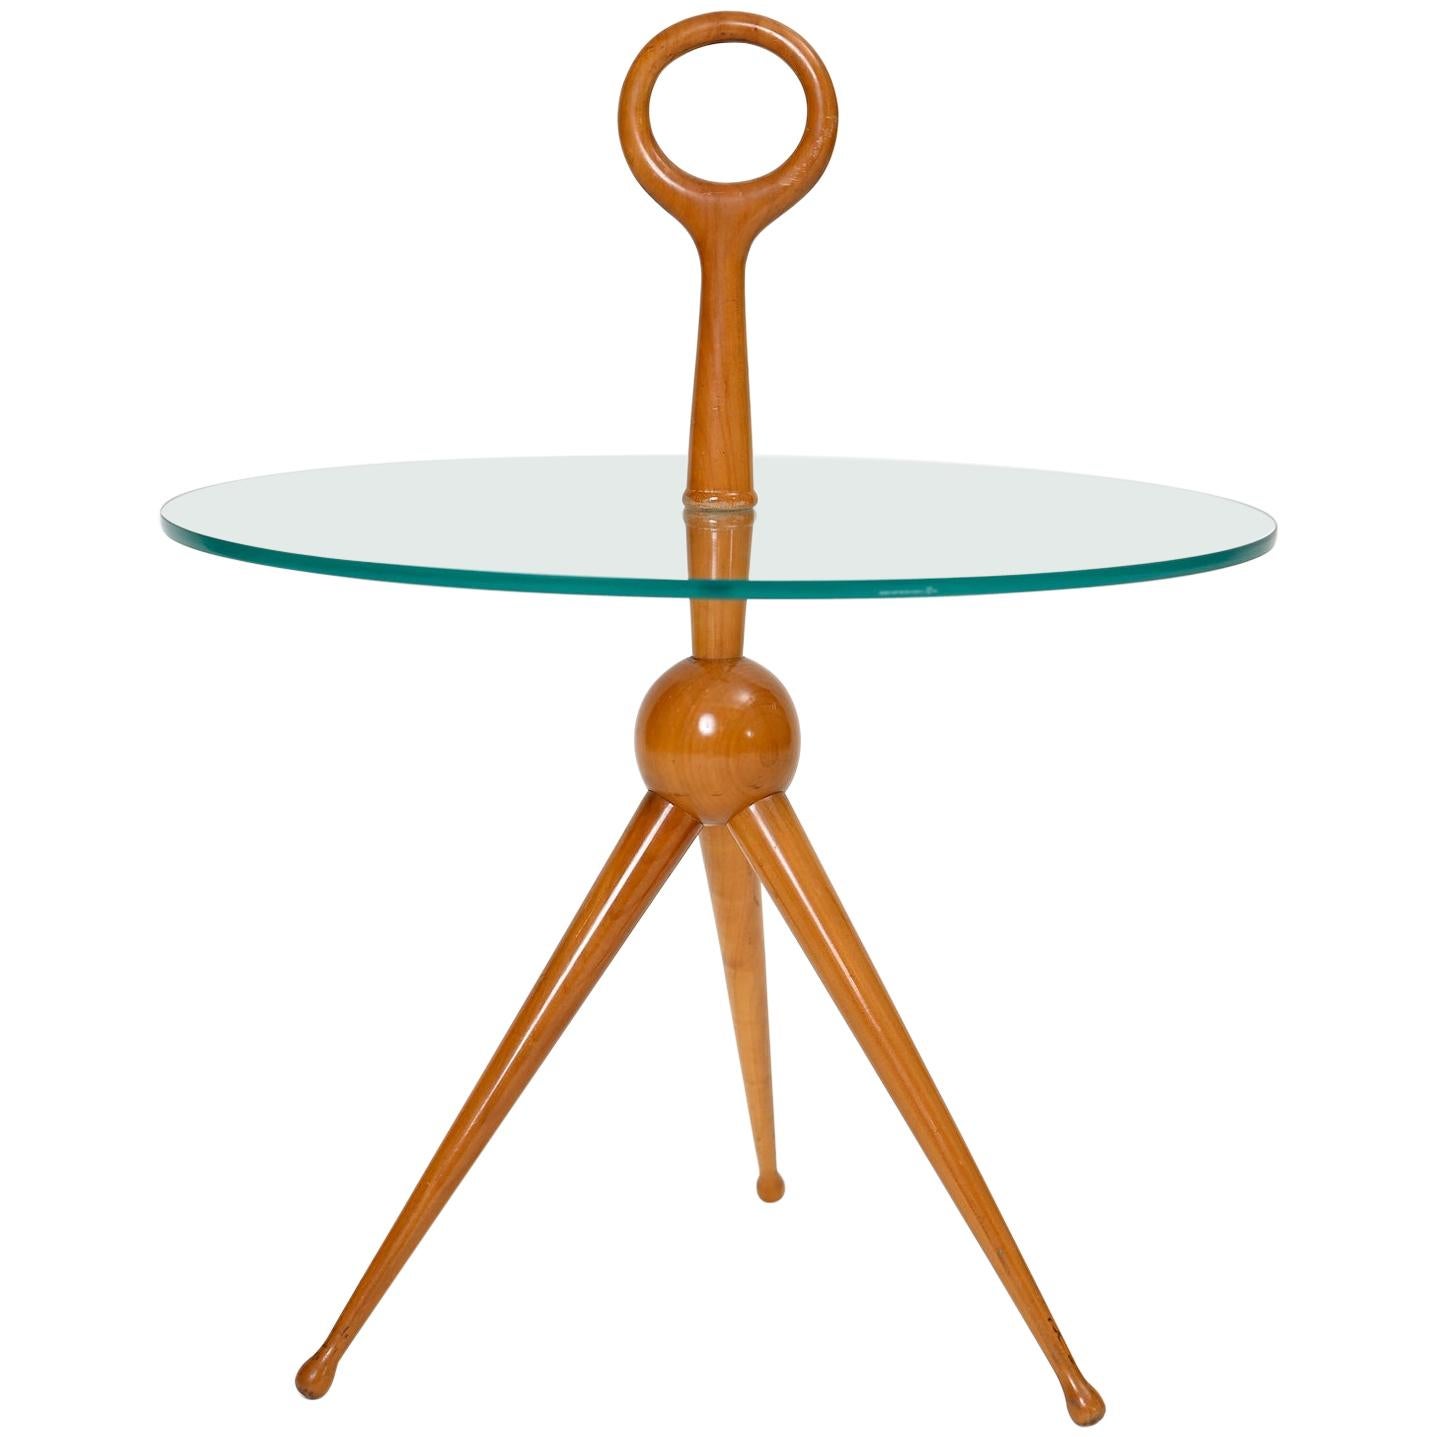 Fontana Art Style Tripod Side Table